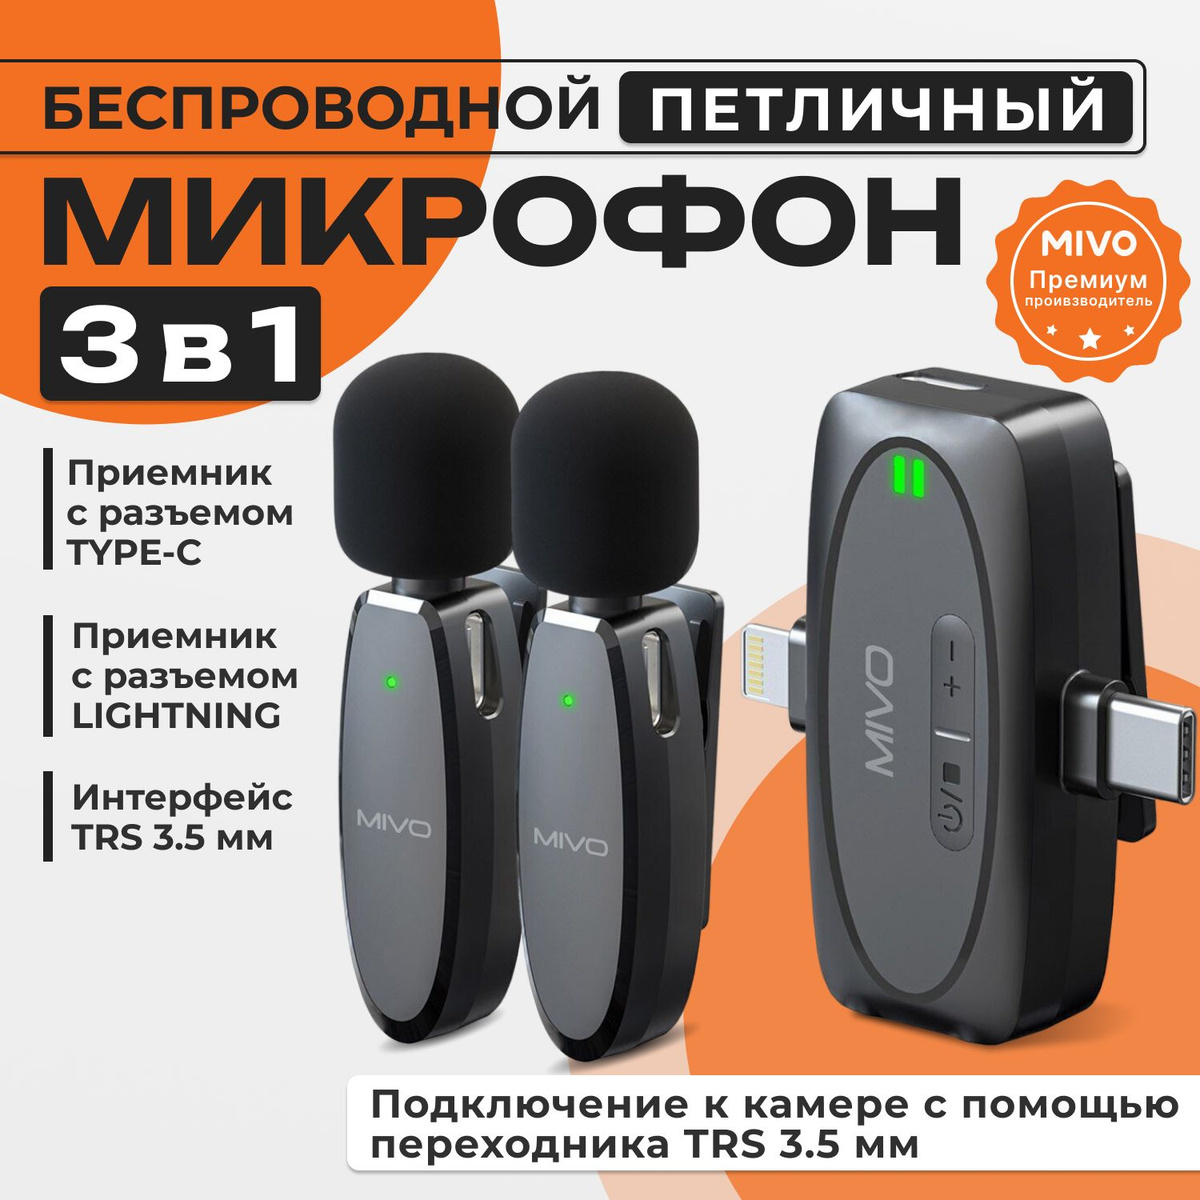 MIVO MK-630 - это высококачественные беспроводные микрофоны, которые обеспечивают четкую и детализированную запись звука в любых условиях. Передатчик микрофона MIVО имеет разъем Туре-С, Lightning, miniJack 3.5mm что обеспечивает совместимость с любыми устройствами, включая смартфоны и планшеты и камеры.